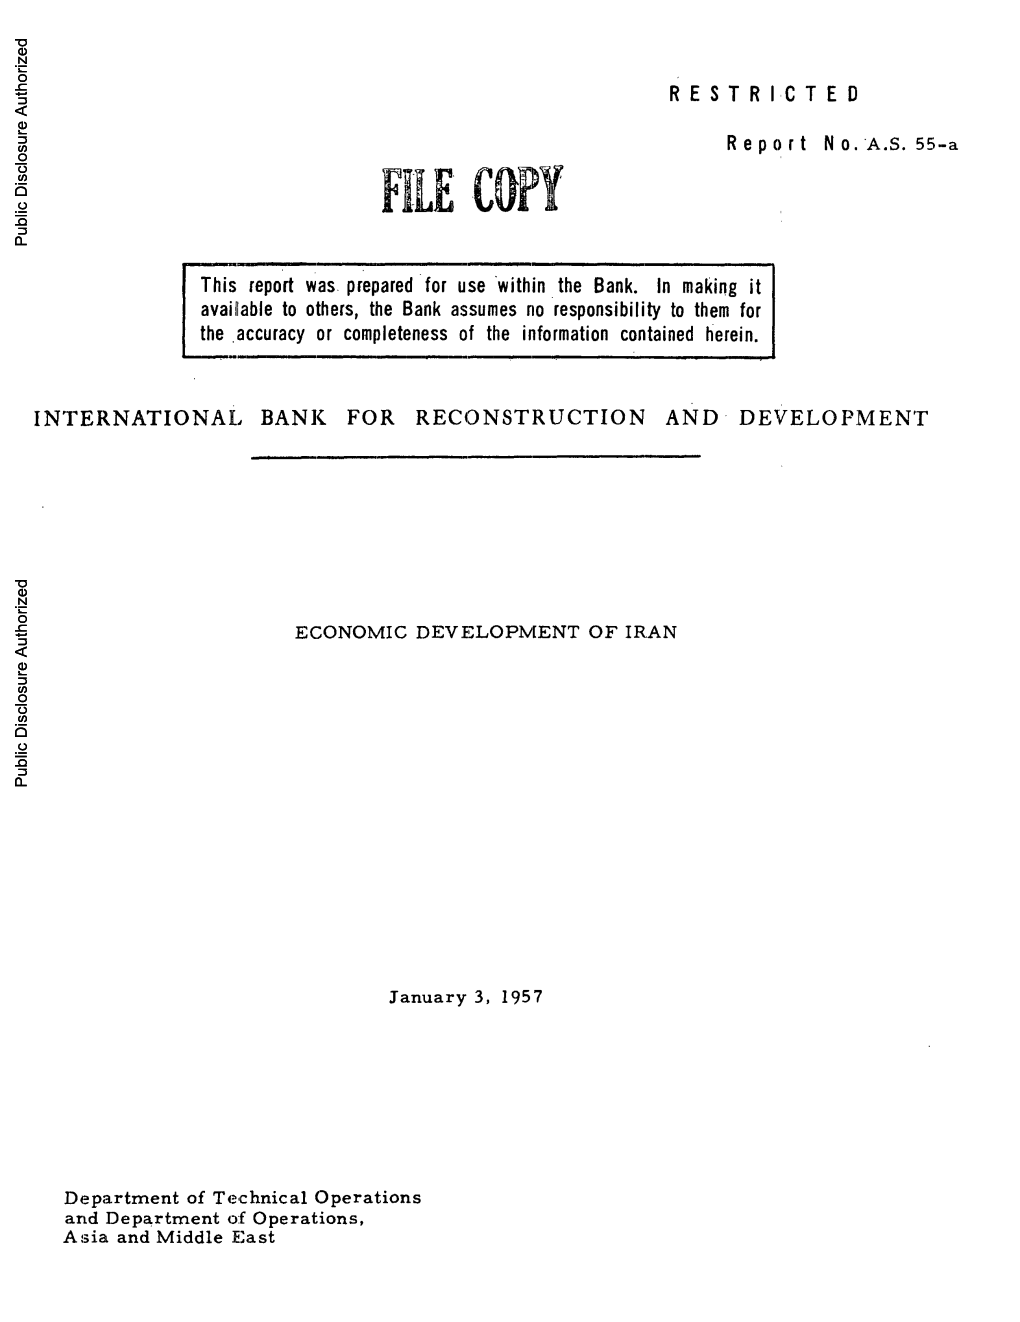 File COPY Public Disclosure Authorized